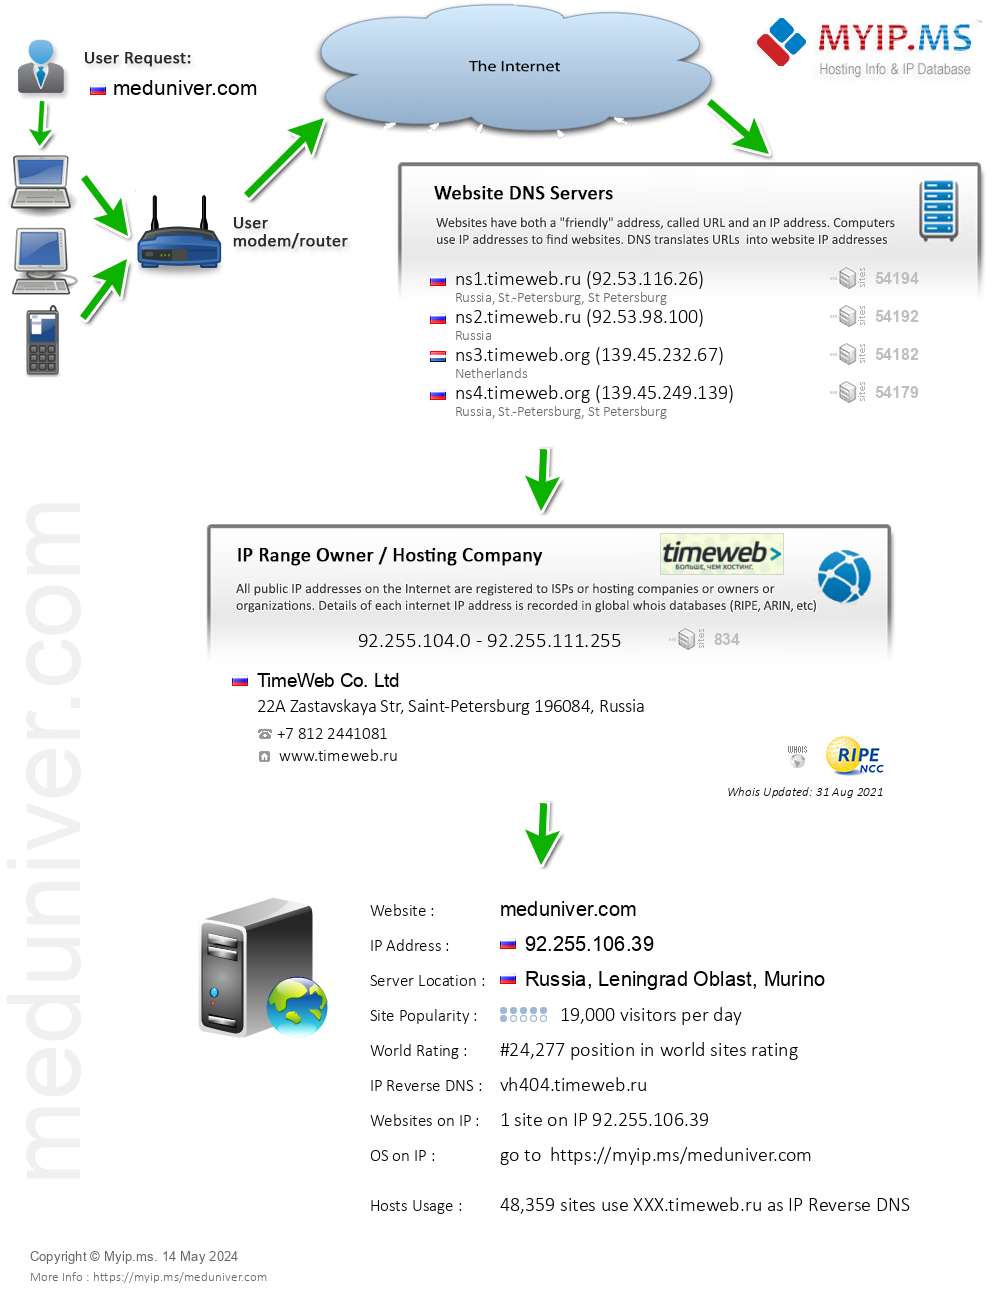 Meduniver.com - Website Hosting Visual IP Diagram